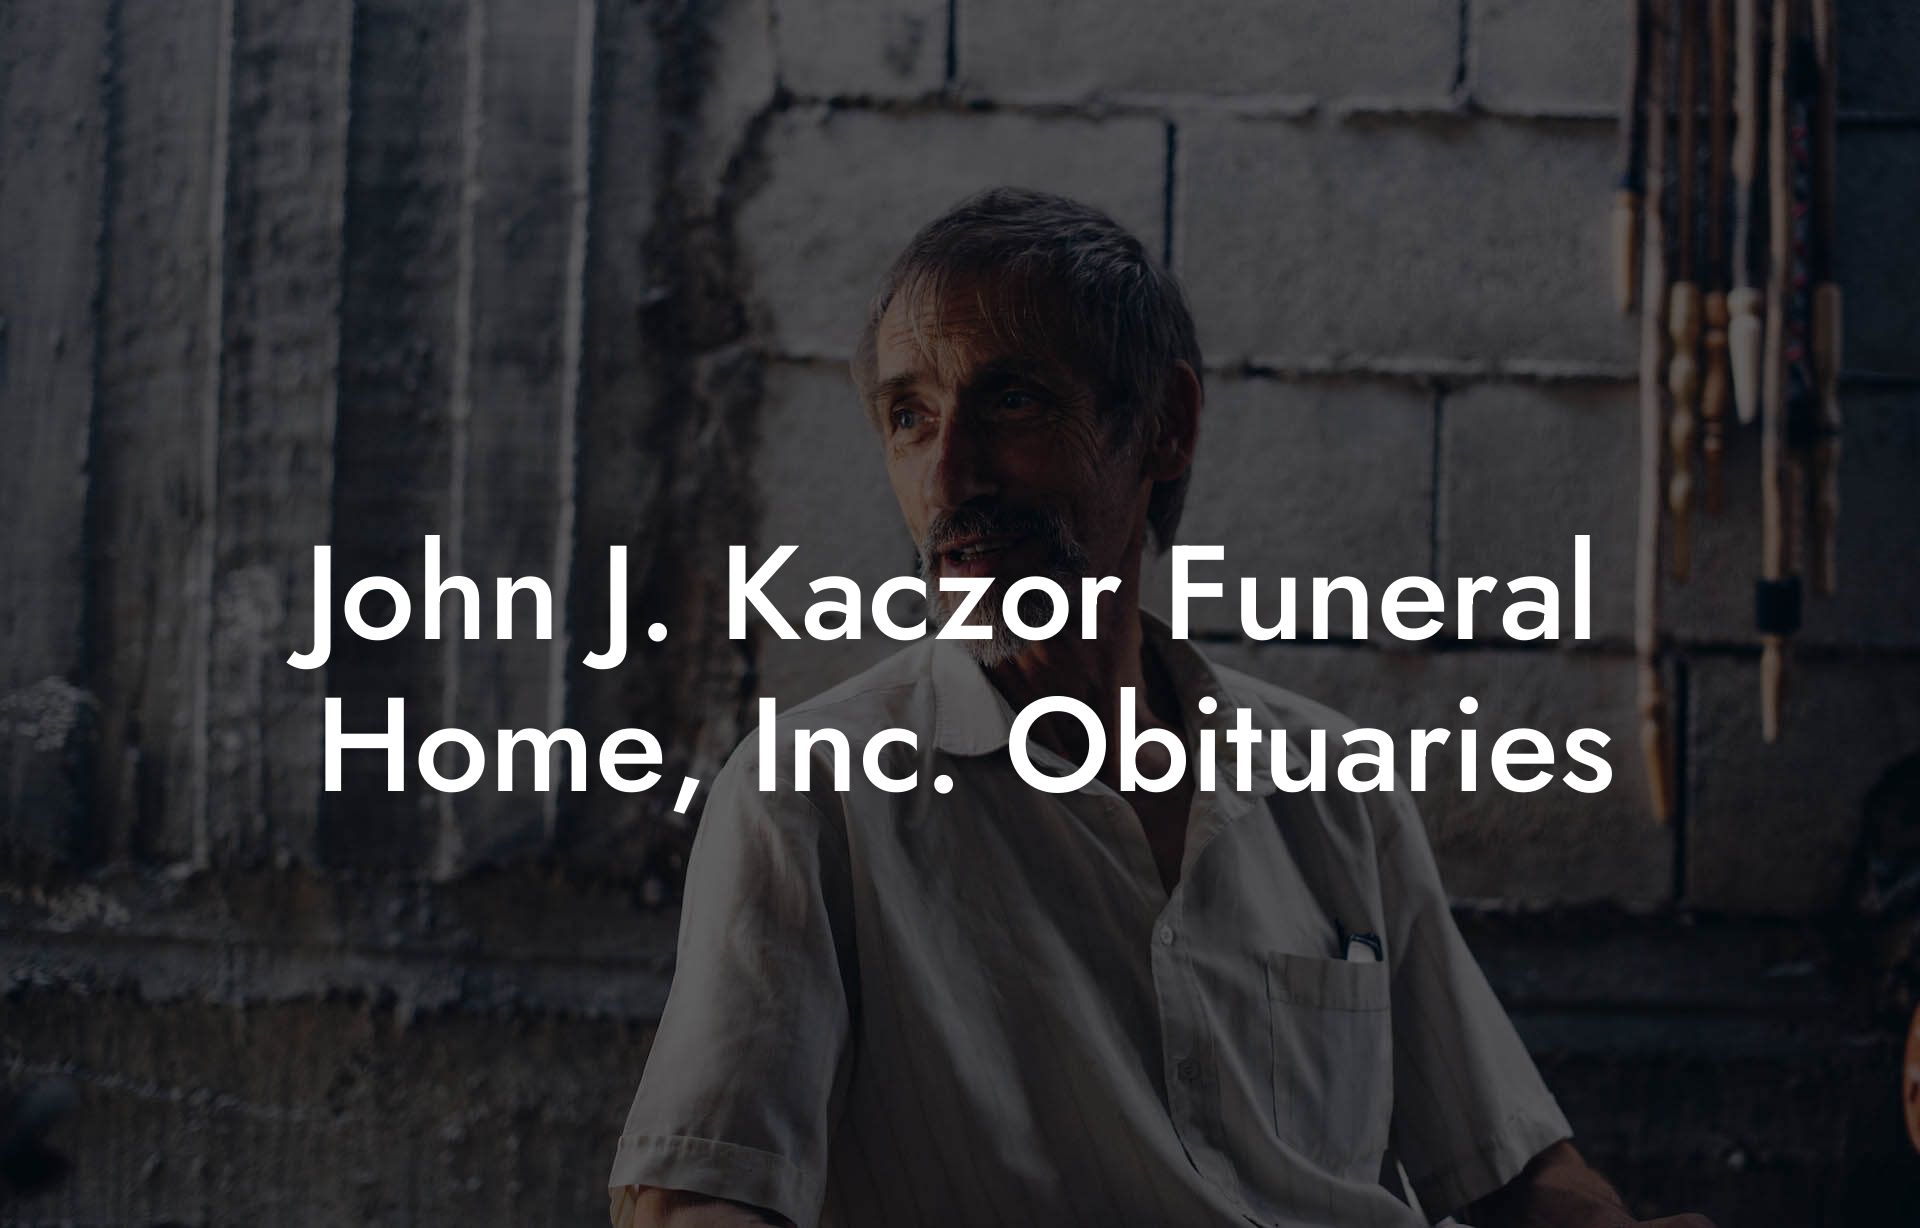 John J. Kaczor Funeral Home, Inc. Obituaries